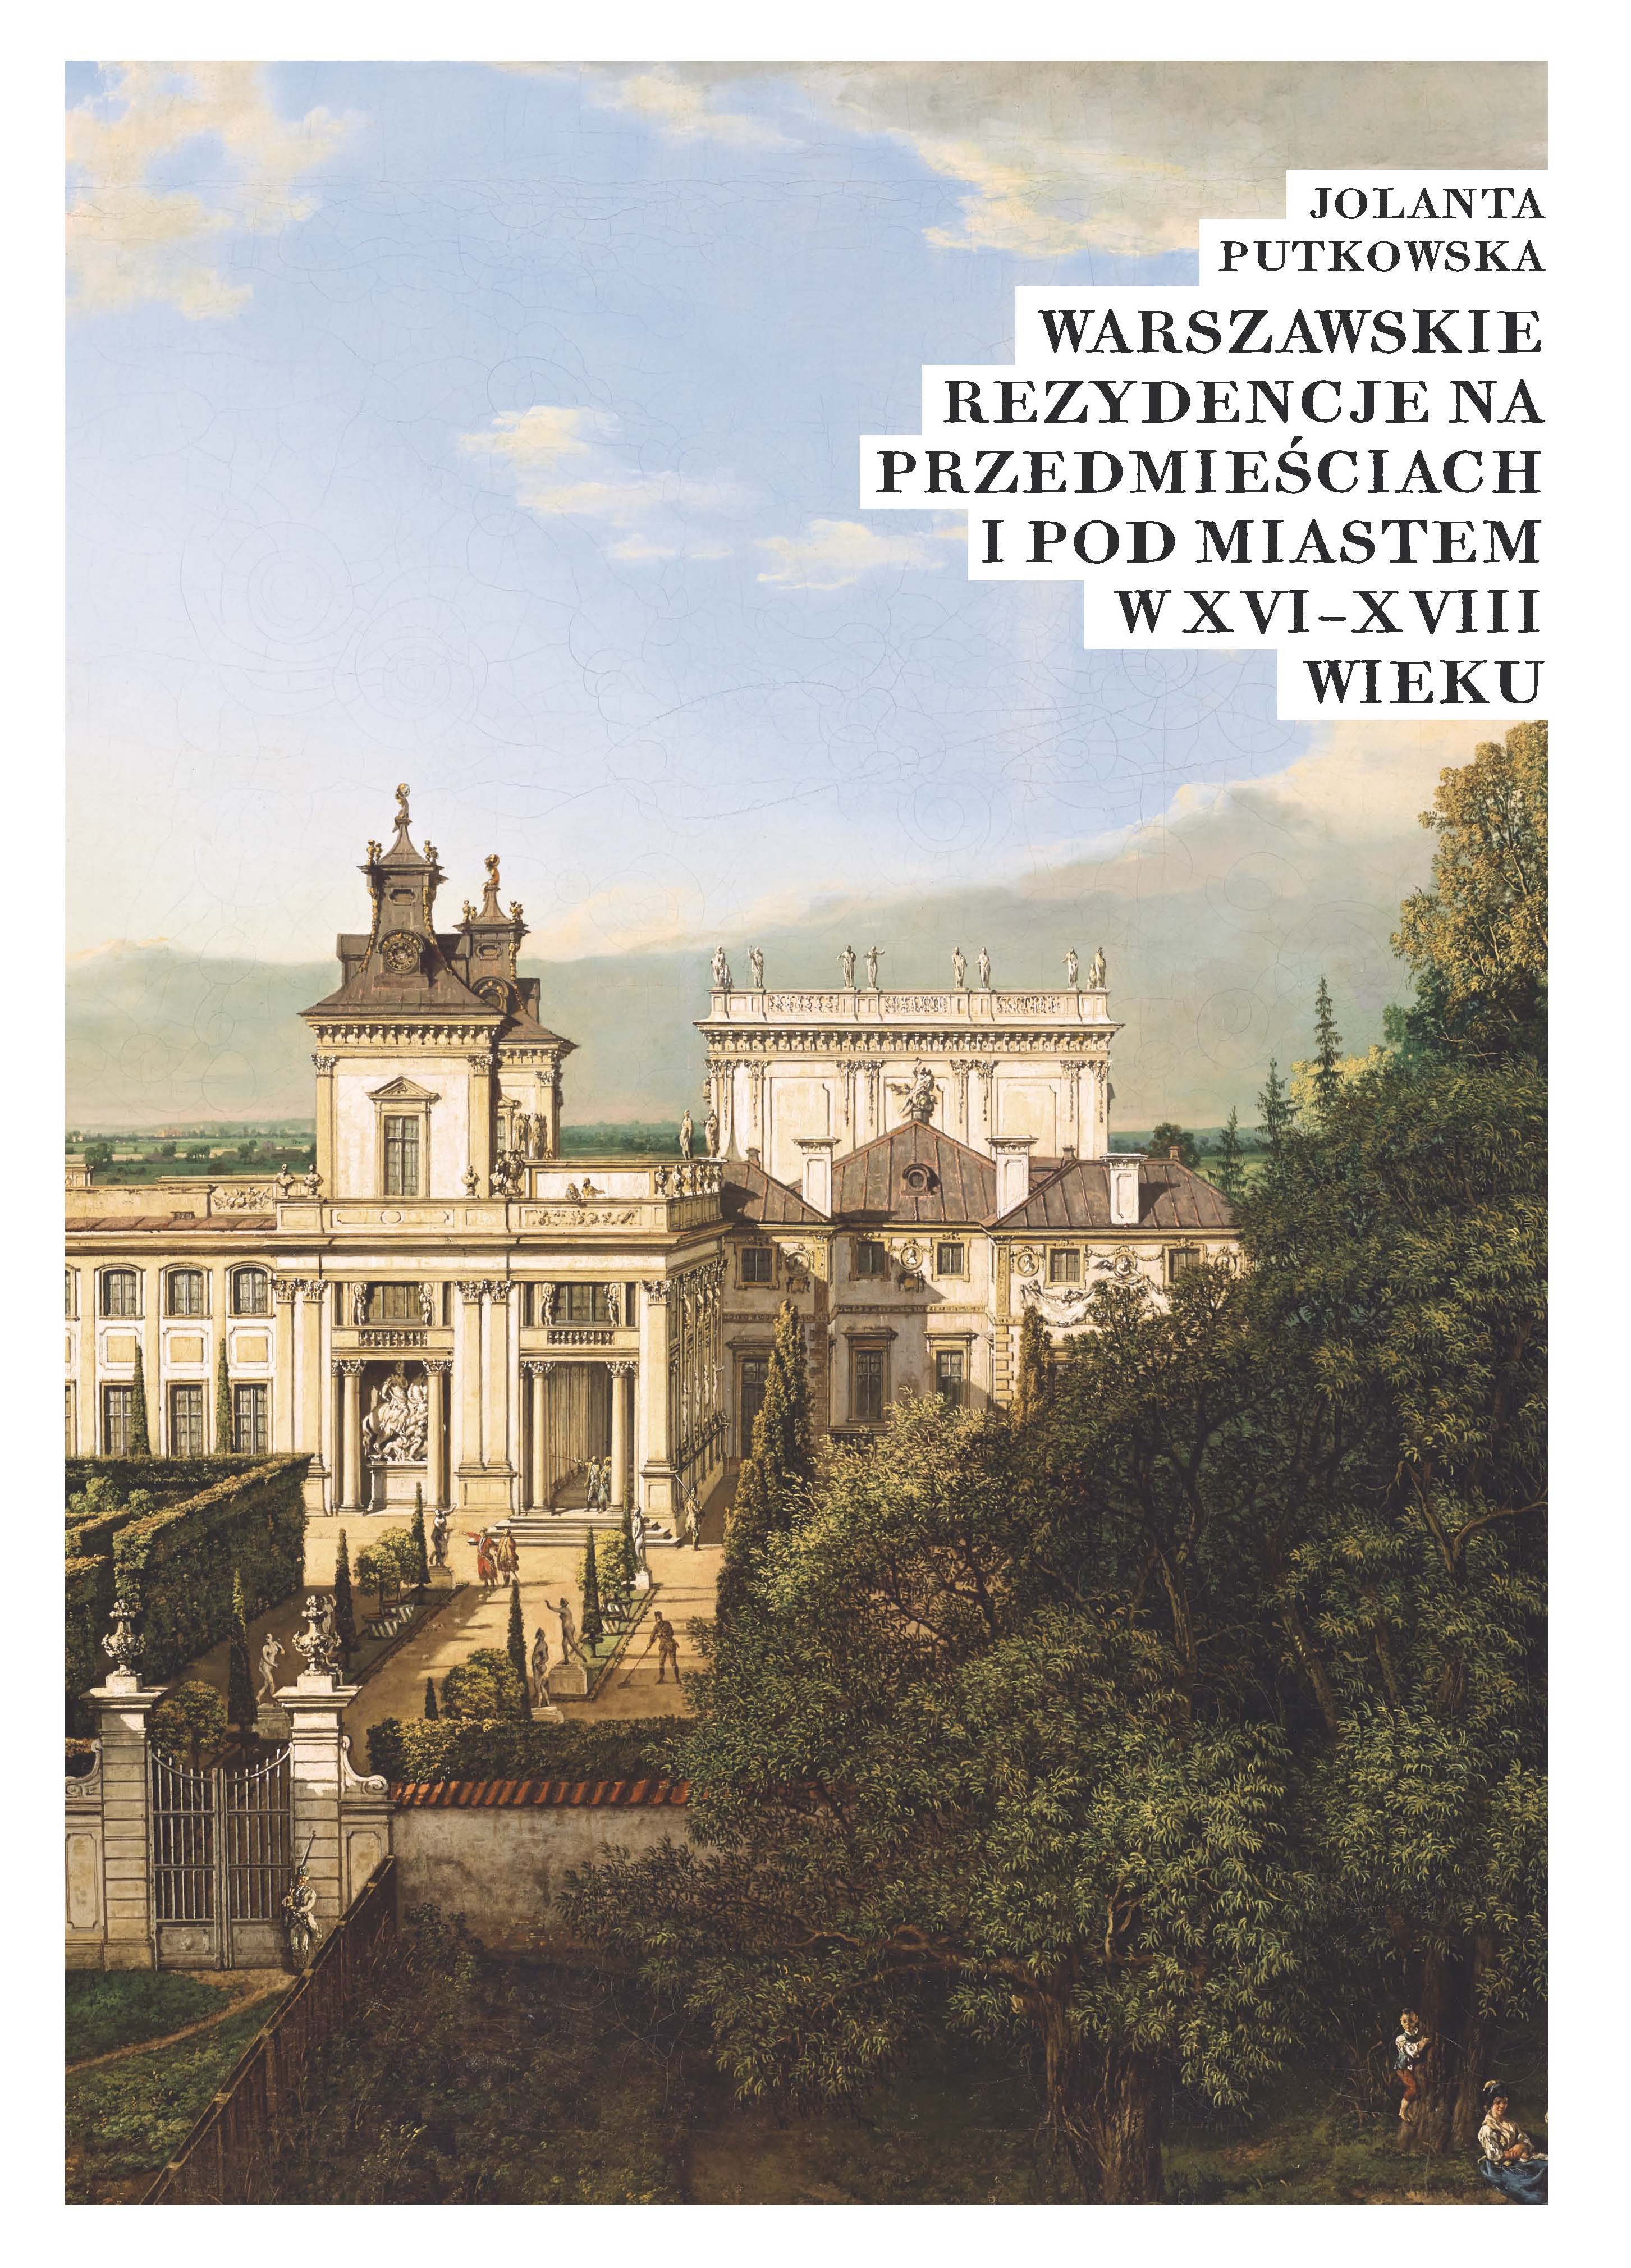 Jolanta Putkowska, Warszawskie rezydencje na przedmieściach i pod miastem w XVI–XVIII wieku